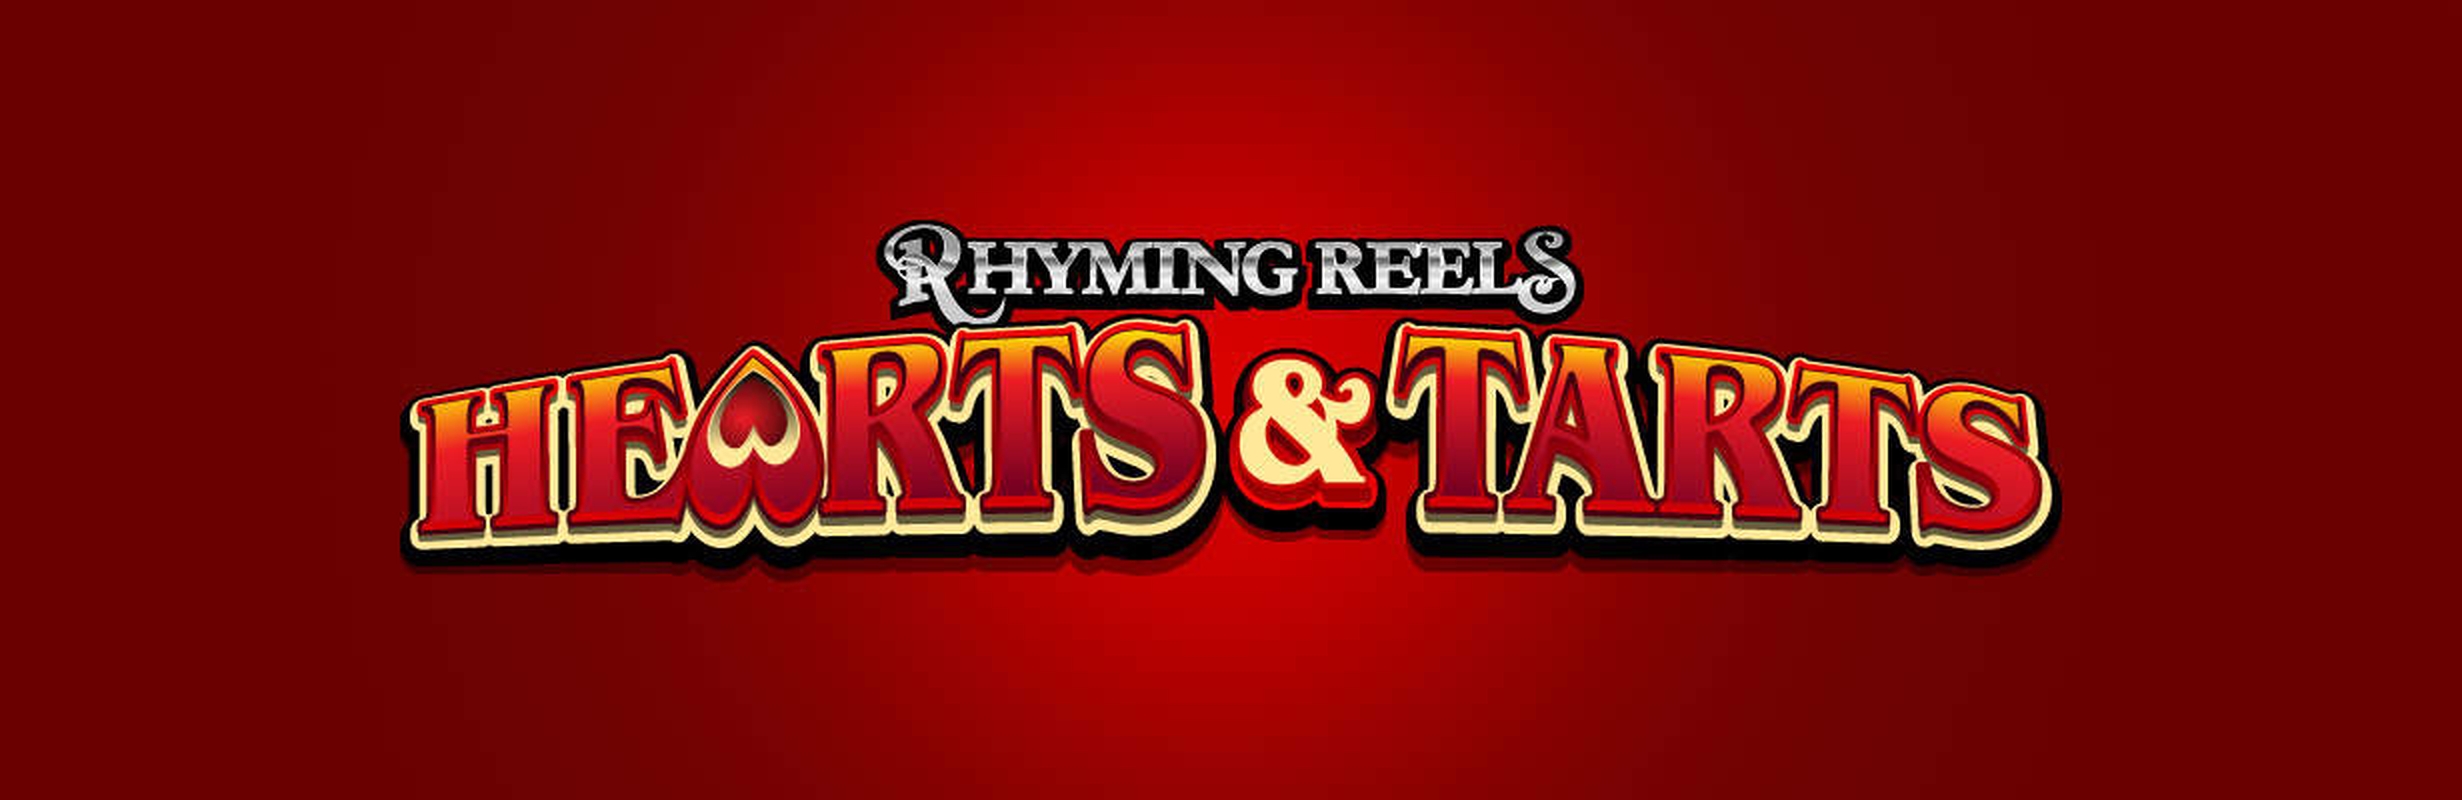 Rhyming Reels - Hearts Tarts demo